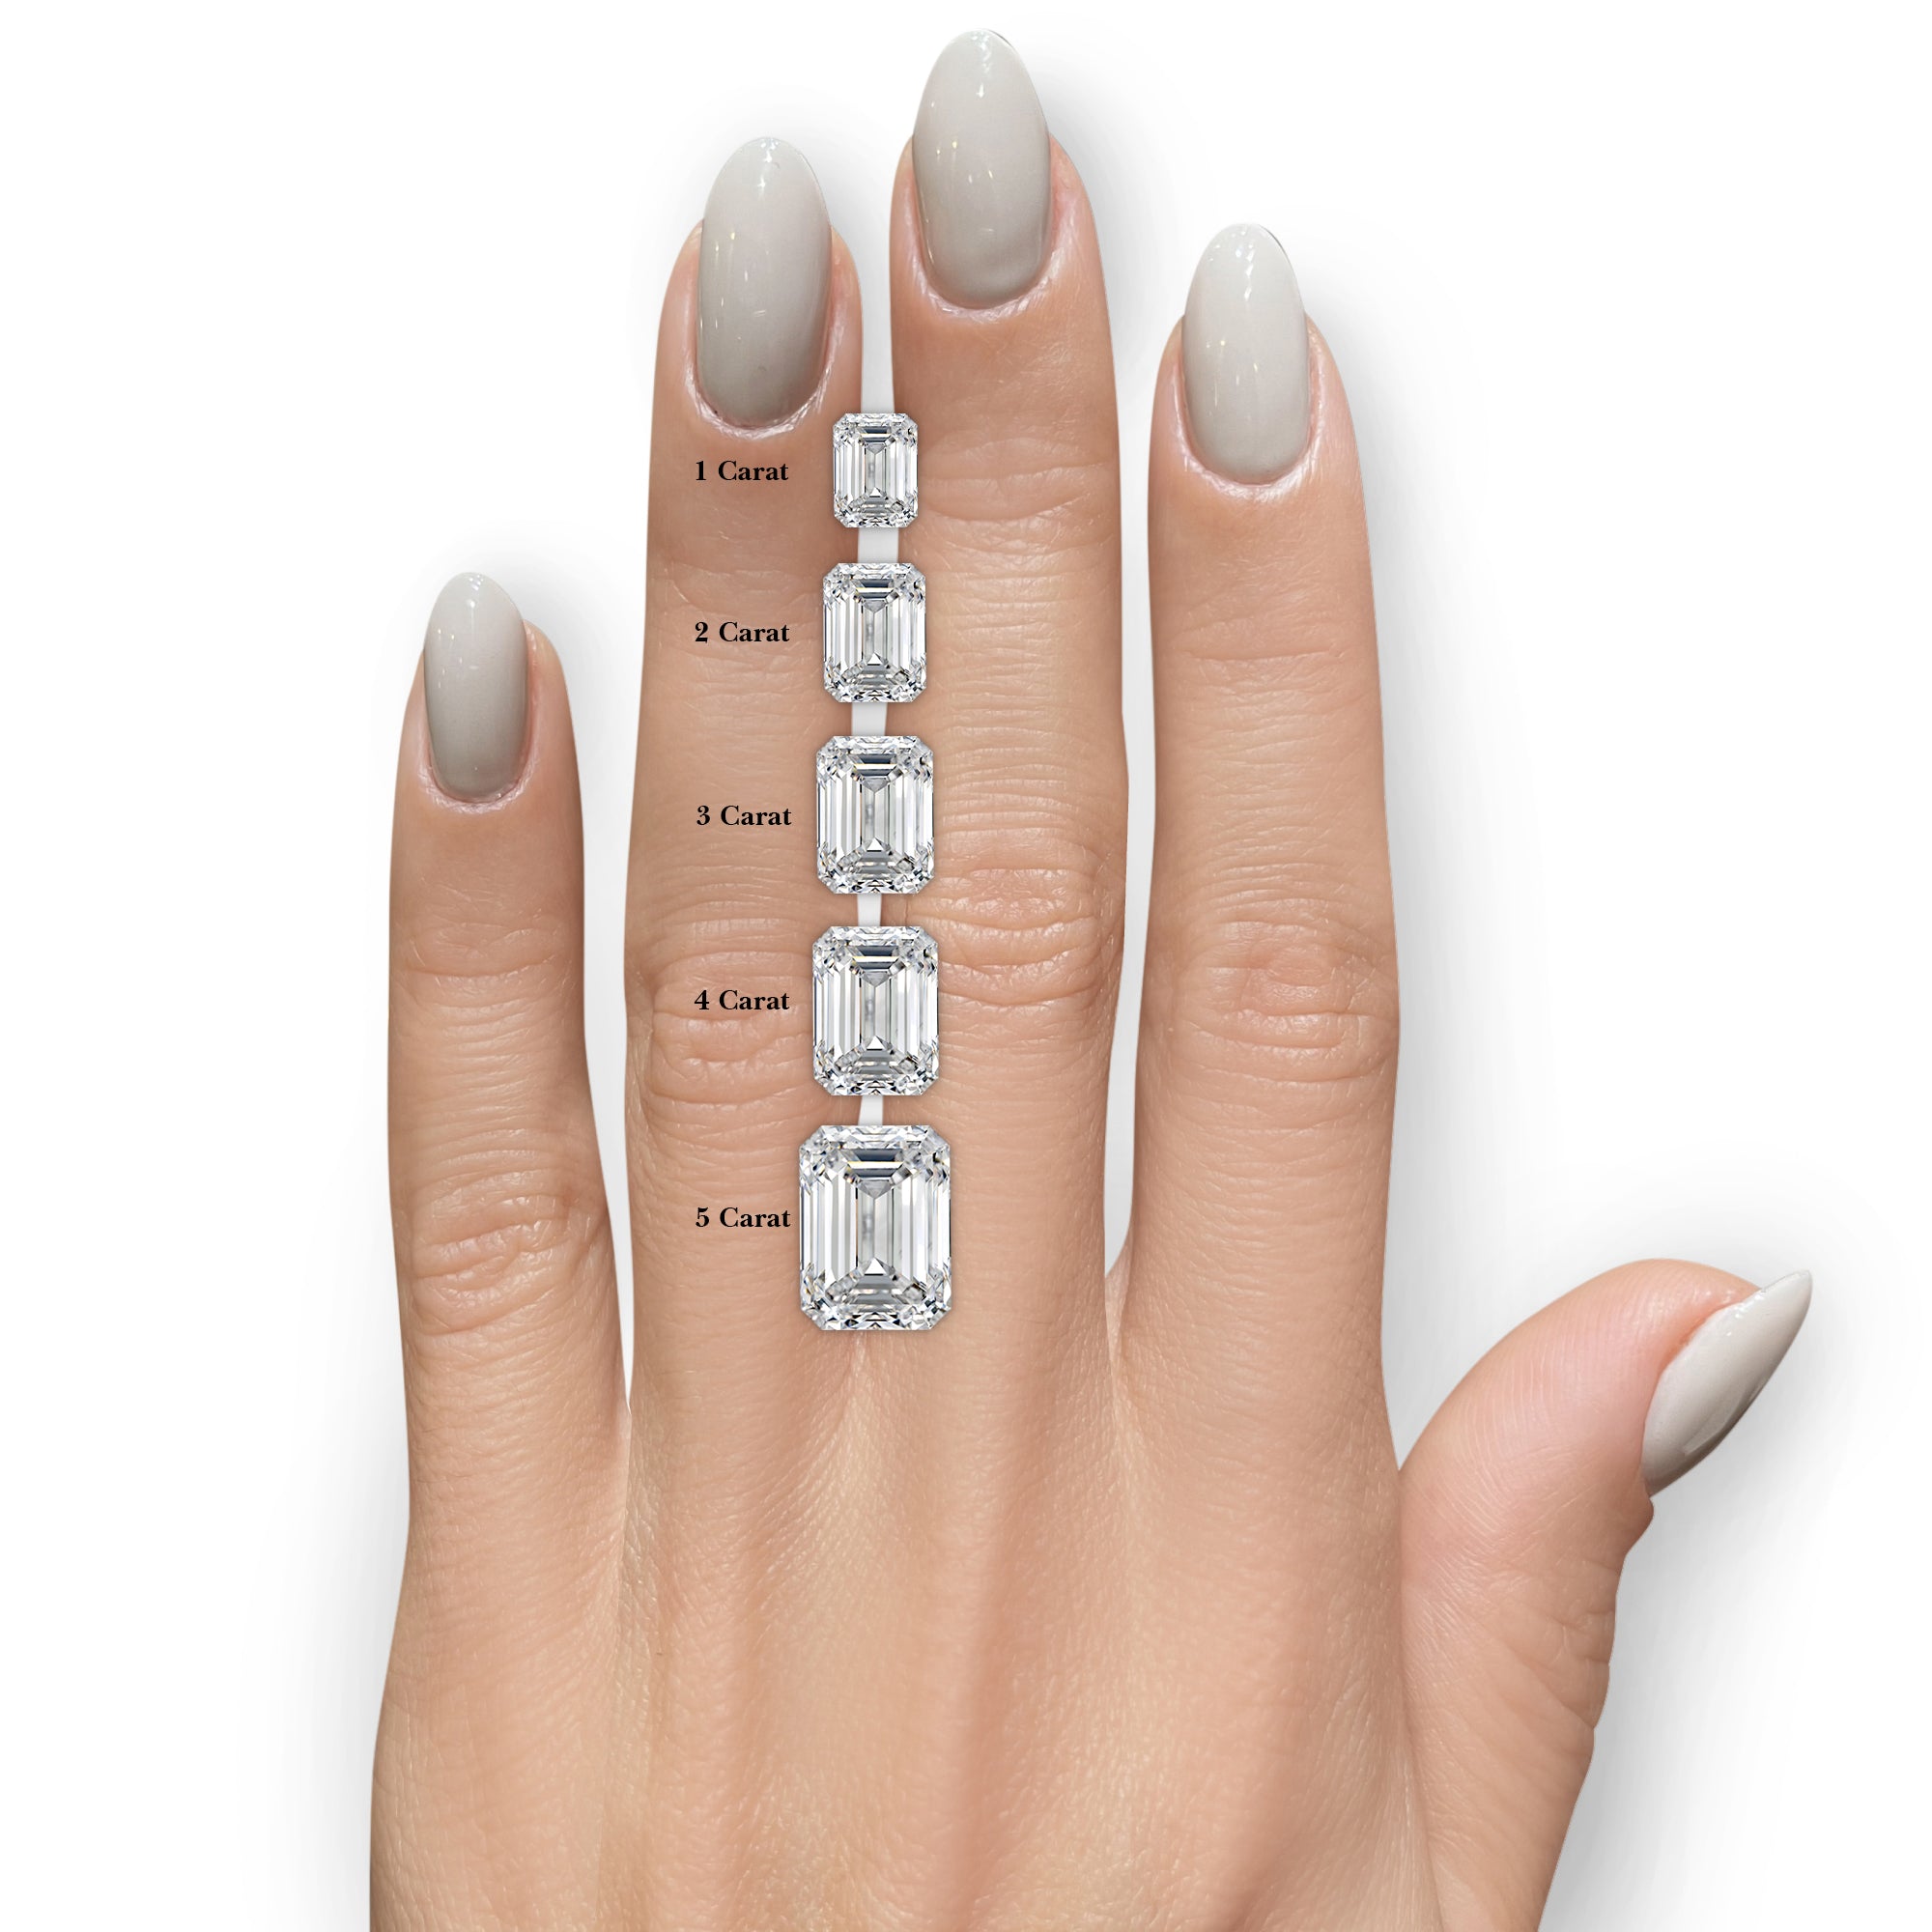 Amanda Lab Grown Diamond Ring -14K White Gold